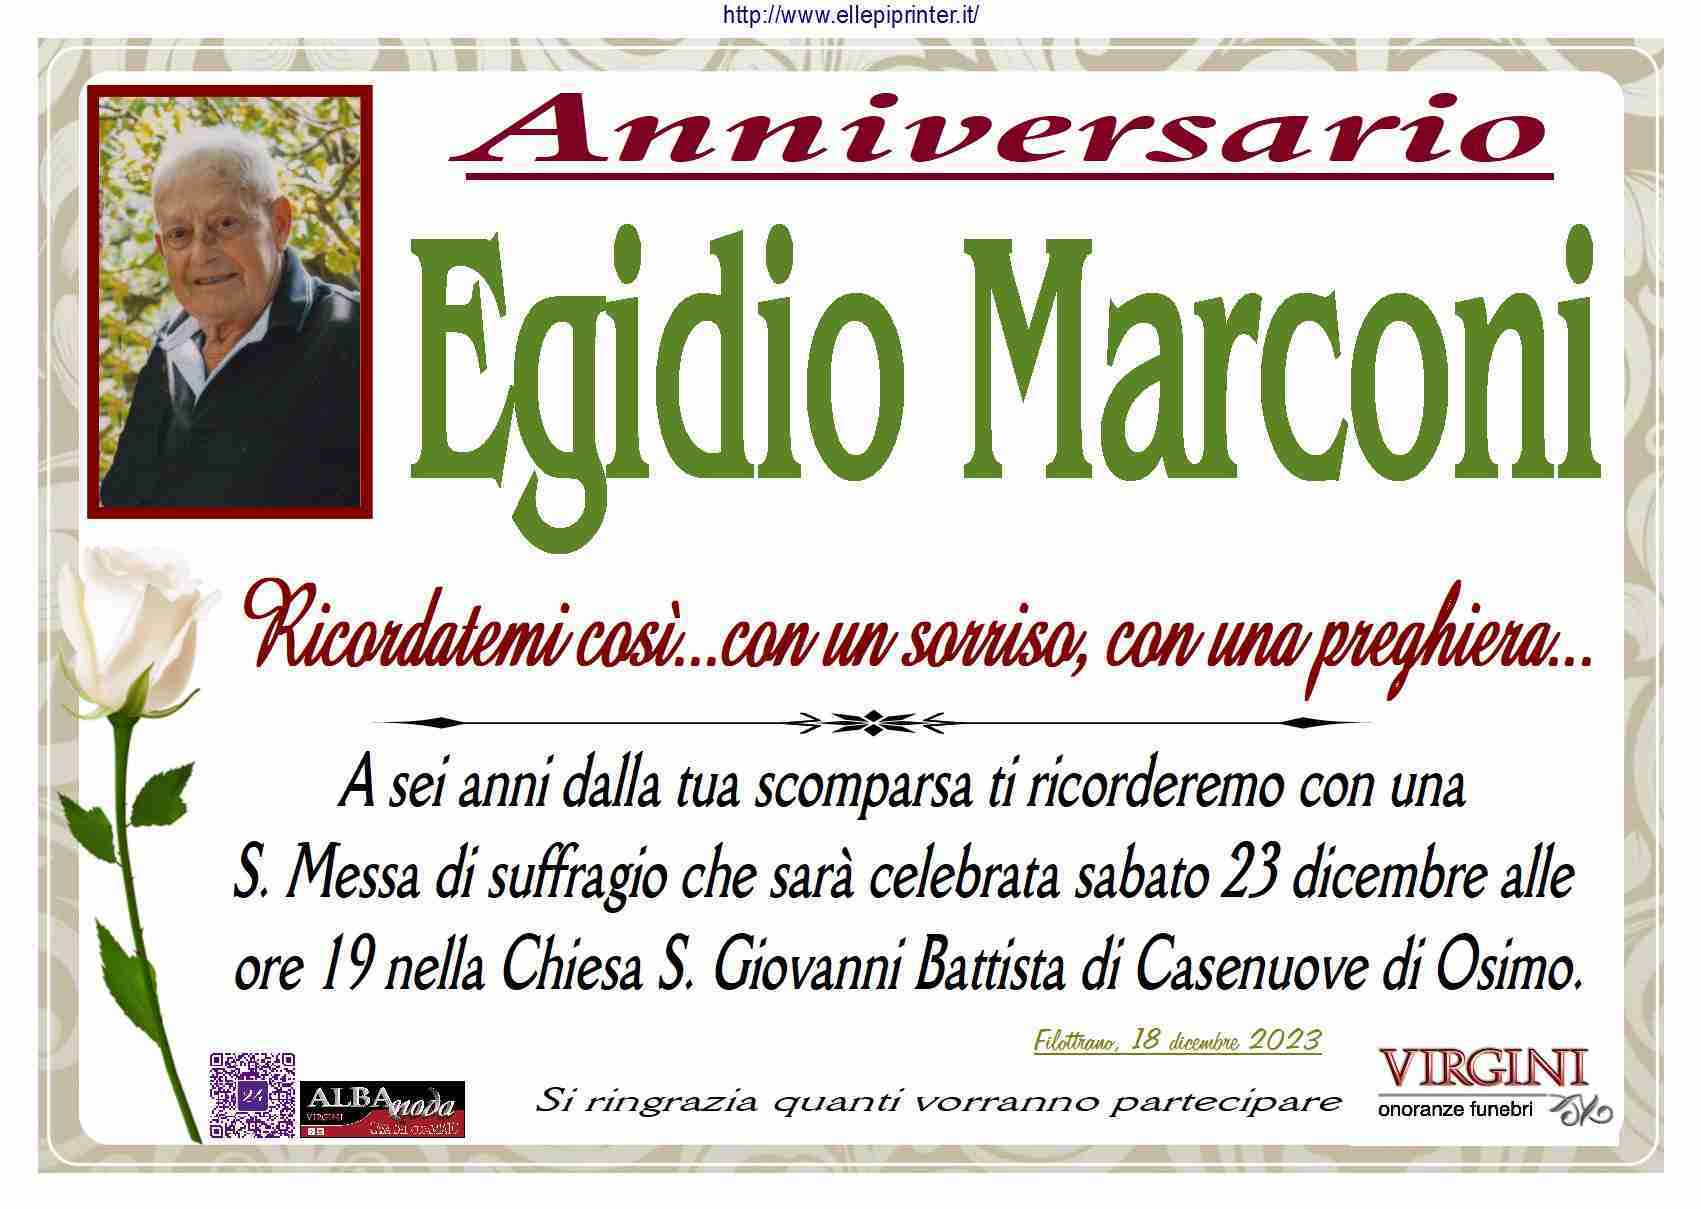 Egidio Marconi